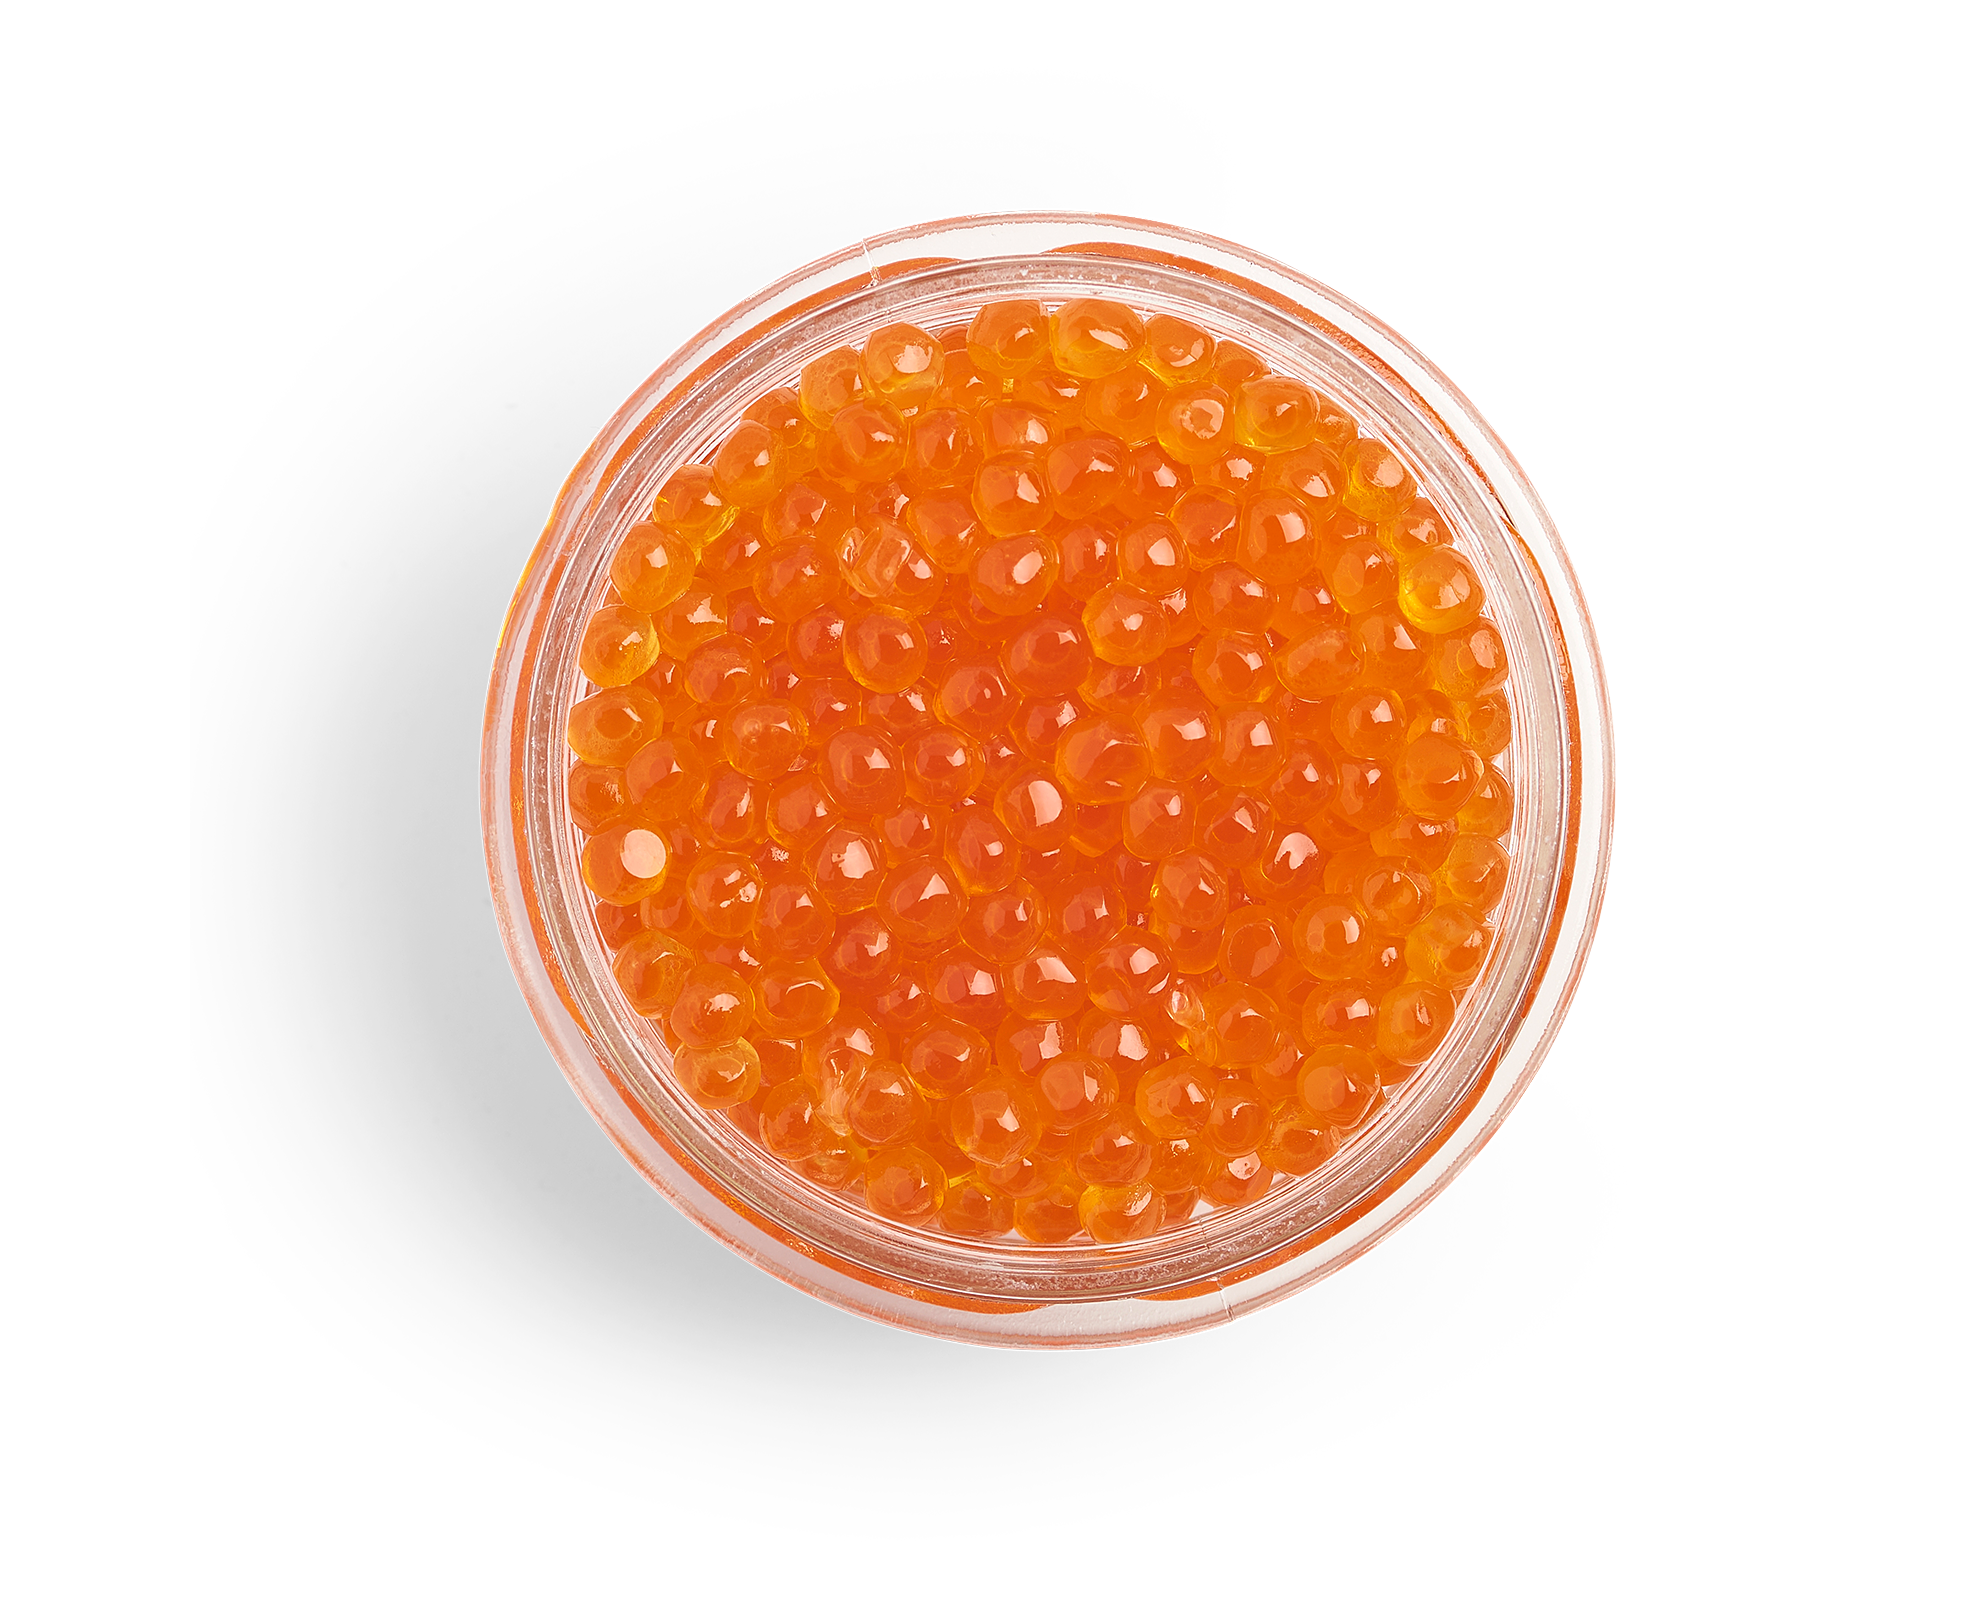 Tsar’s Salmon Red Caviar